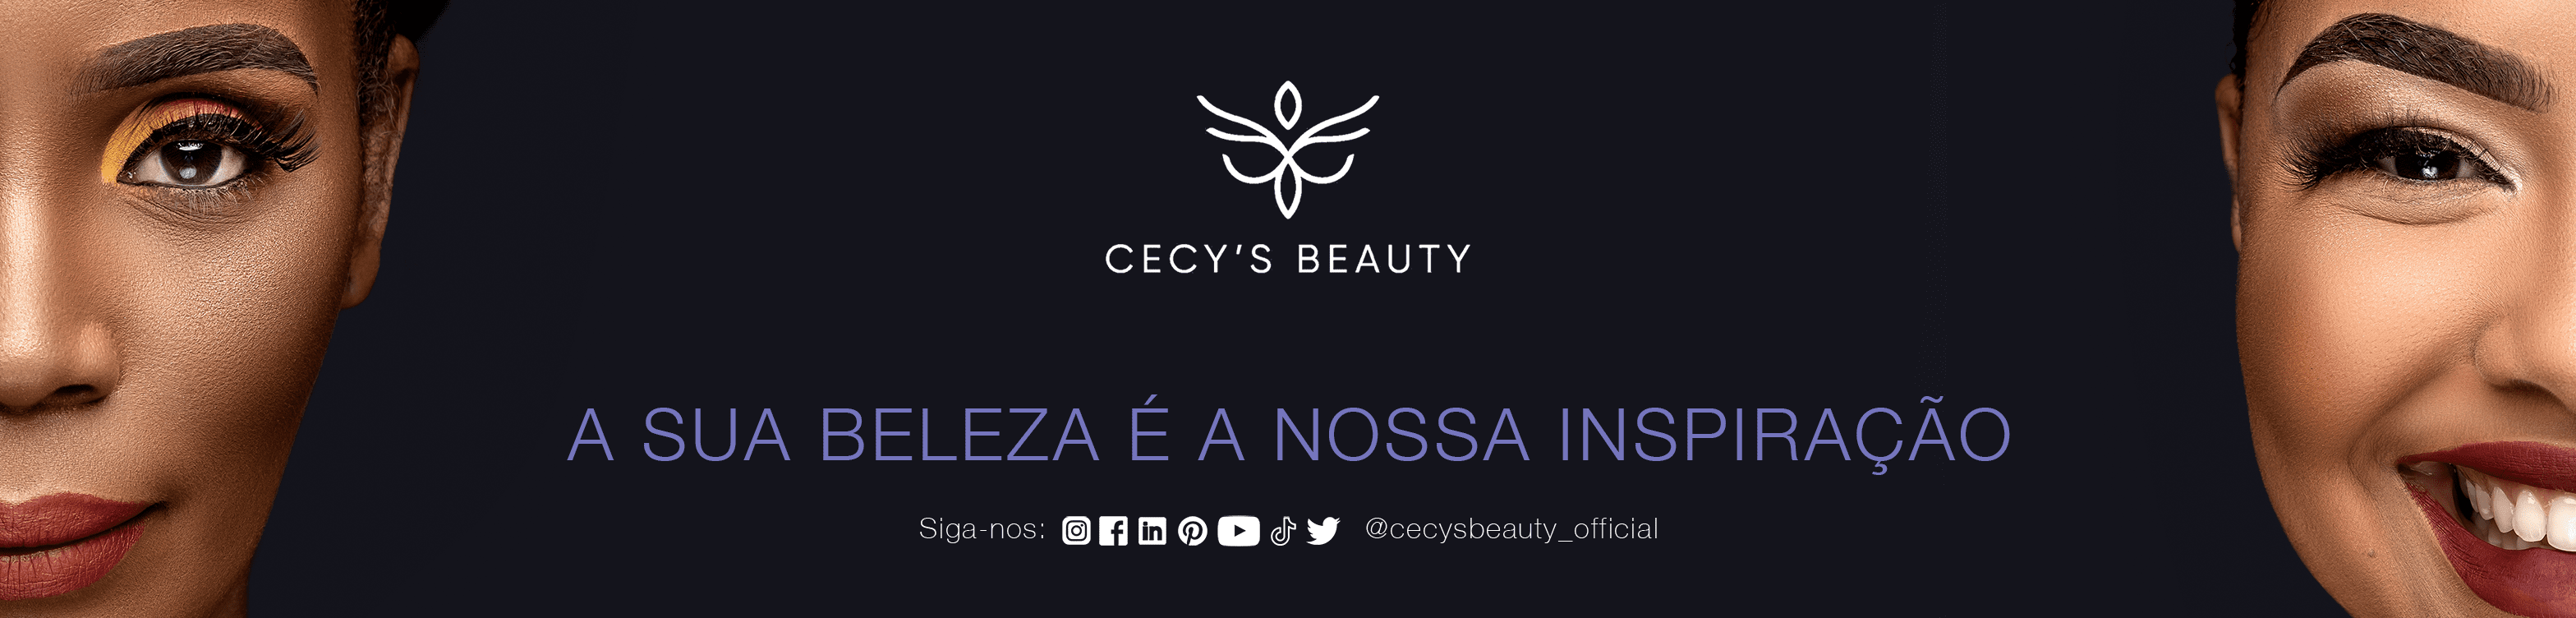 Cecys' Beauty